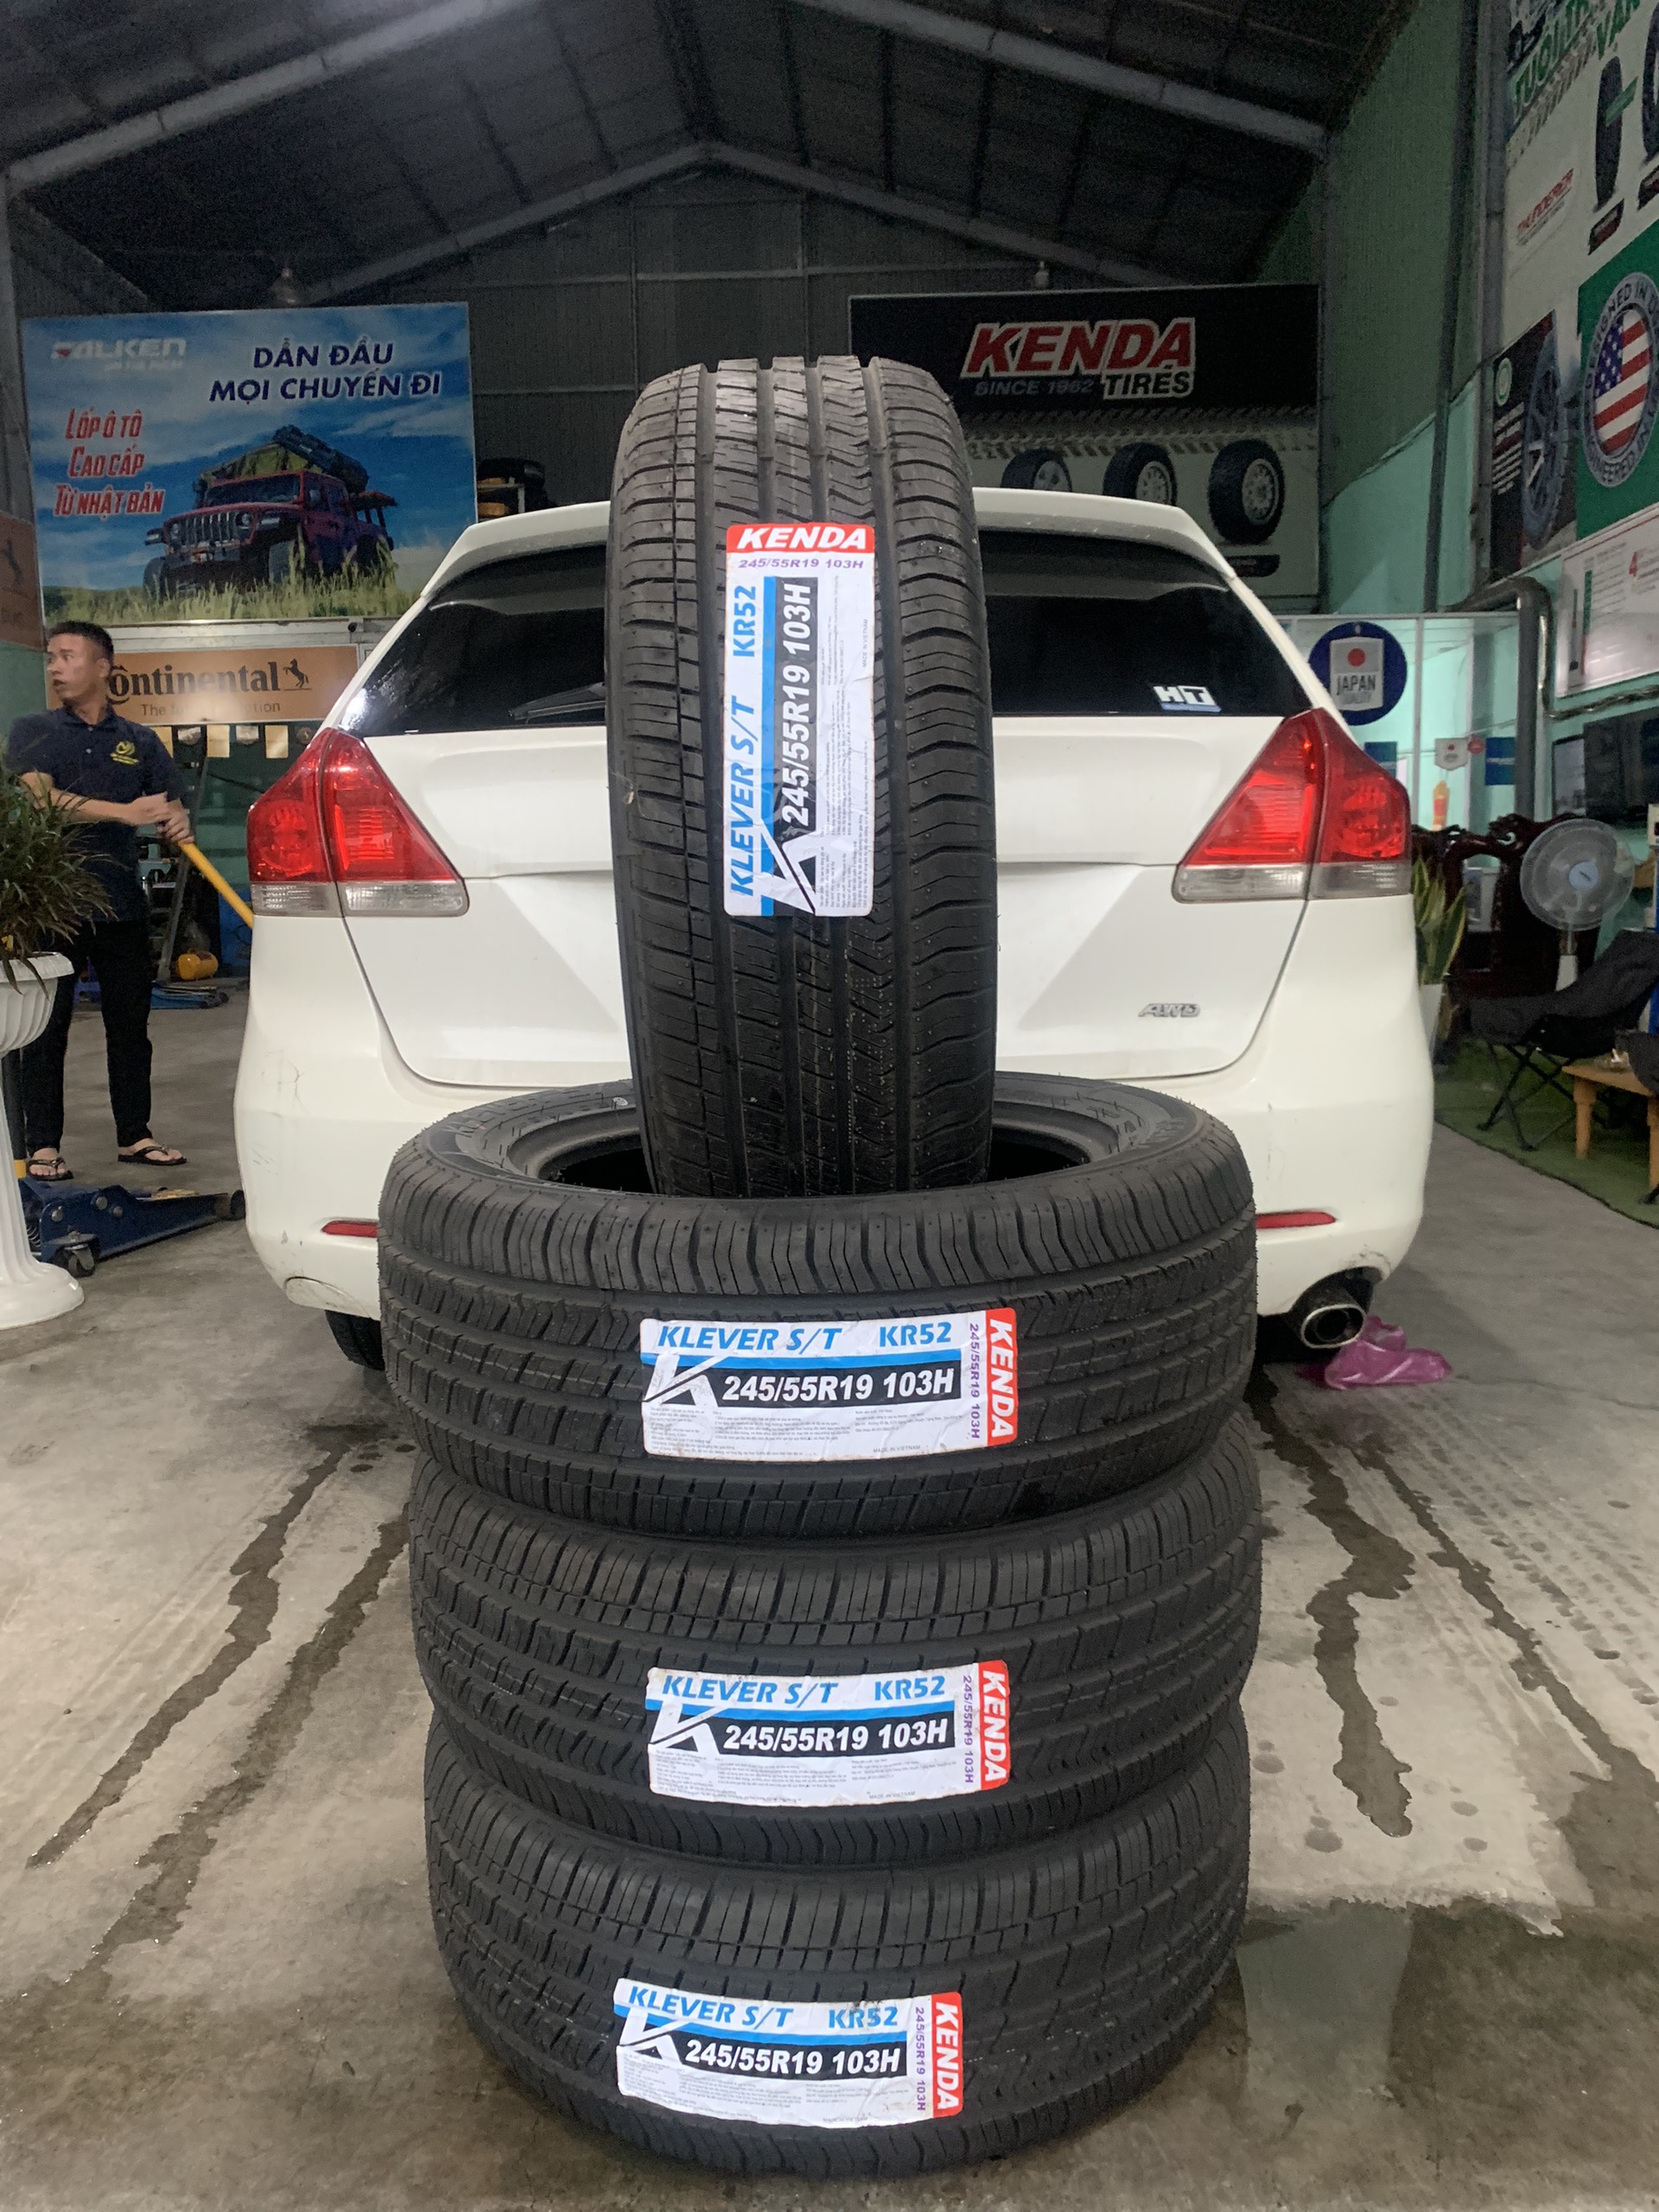 TƯ VẤN : Thay lốp xe Toyota Venza chính hãng ở Biên Hoà, Đồng Nai.